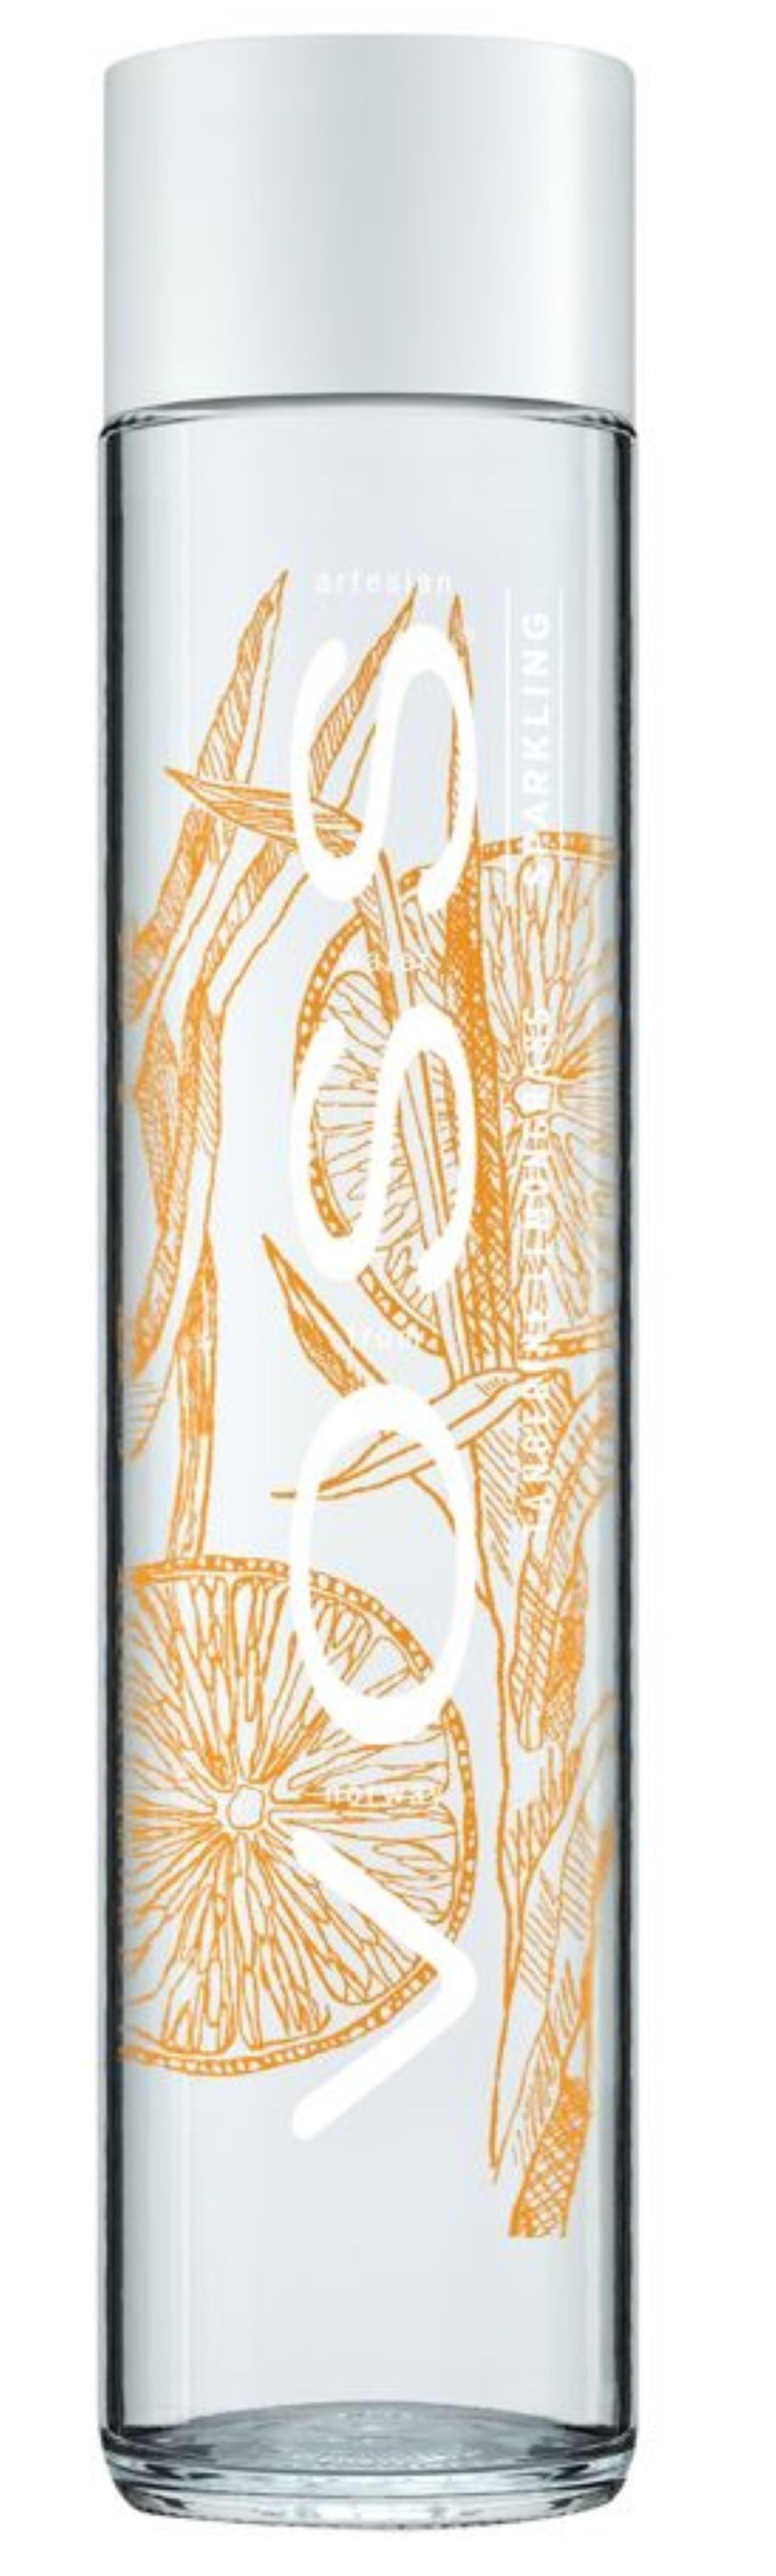 Sparkling Voss Water Tangerine & Lemongrass 375ml